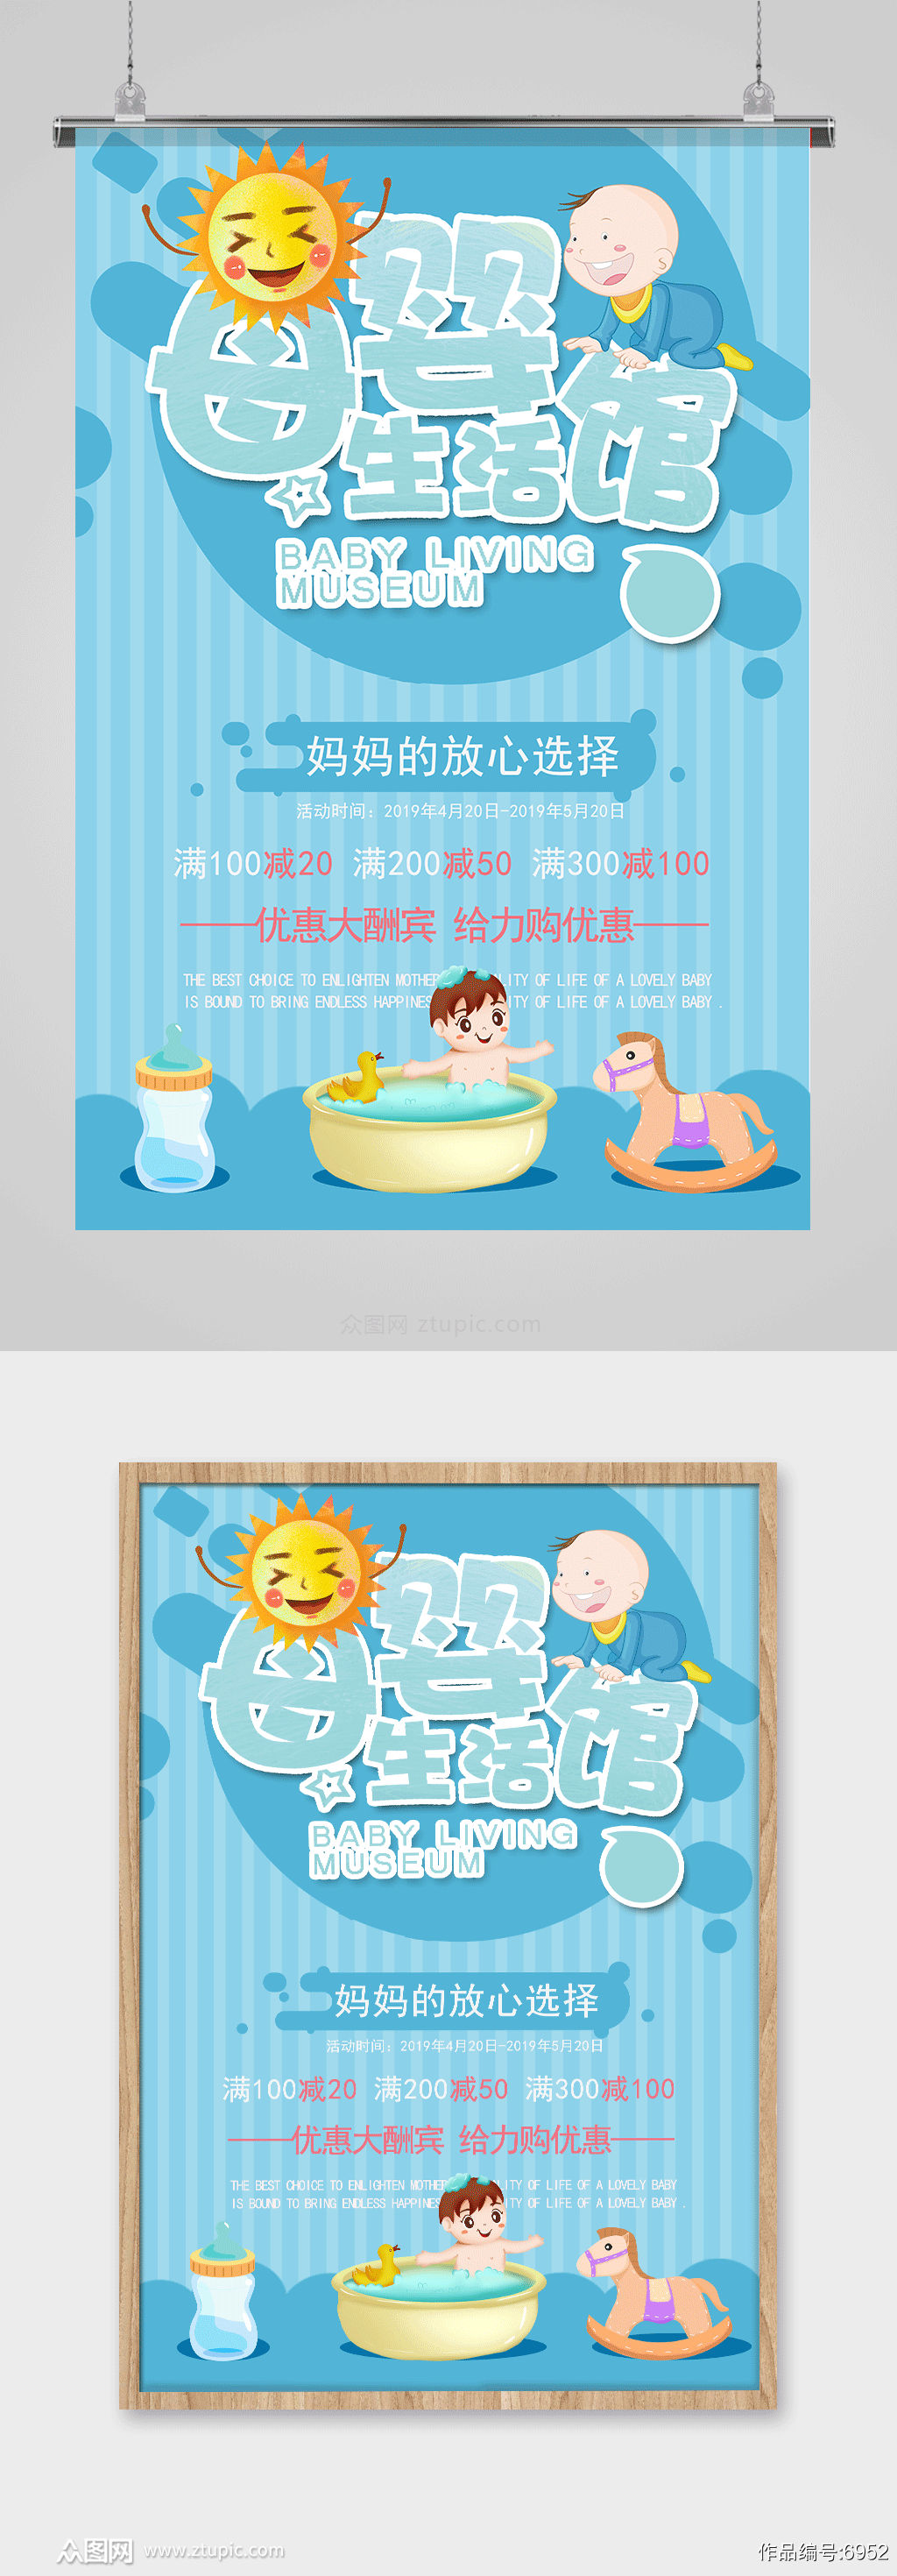 蓝色可爱母婴生活馆母婴用品海报设计素材